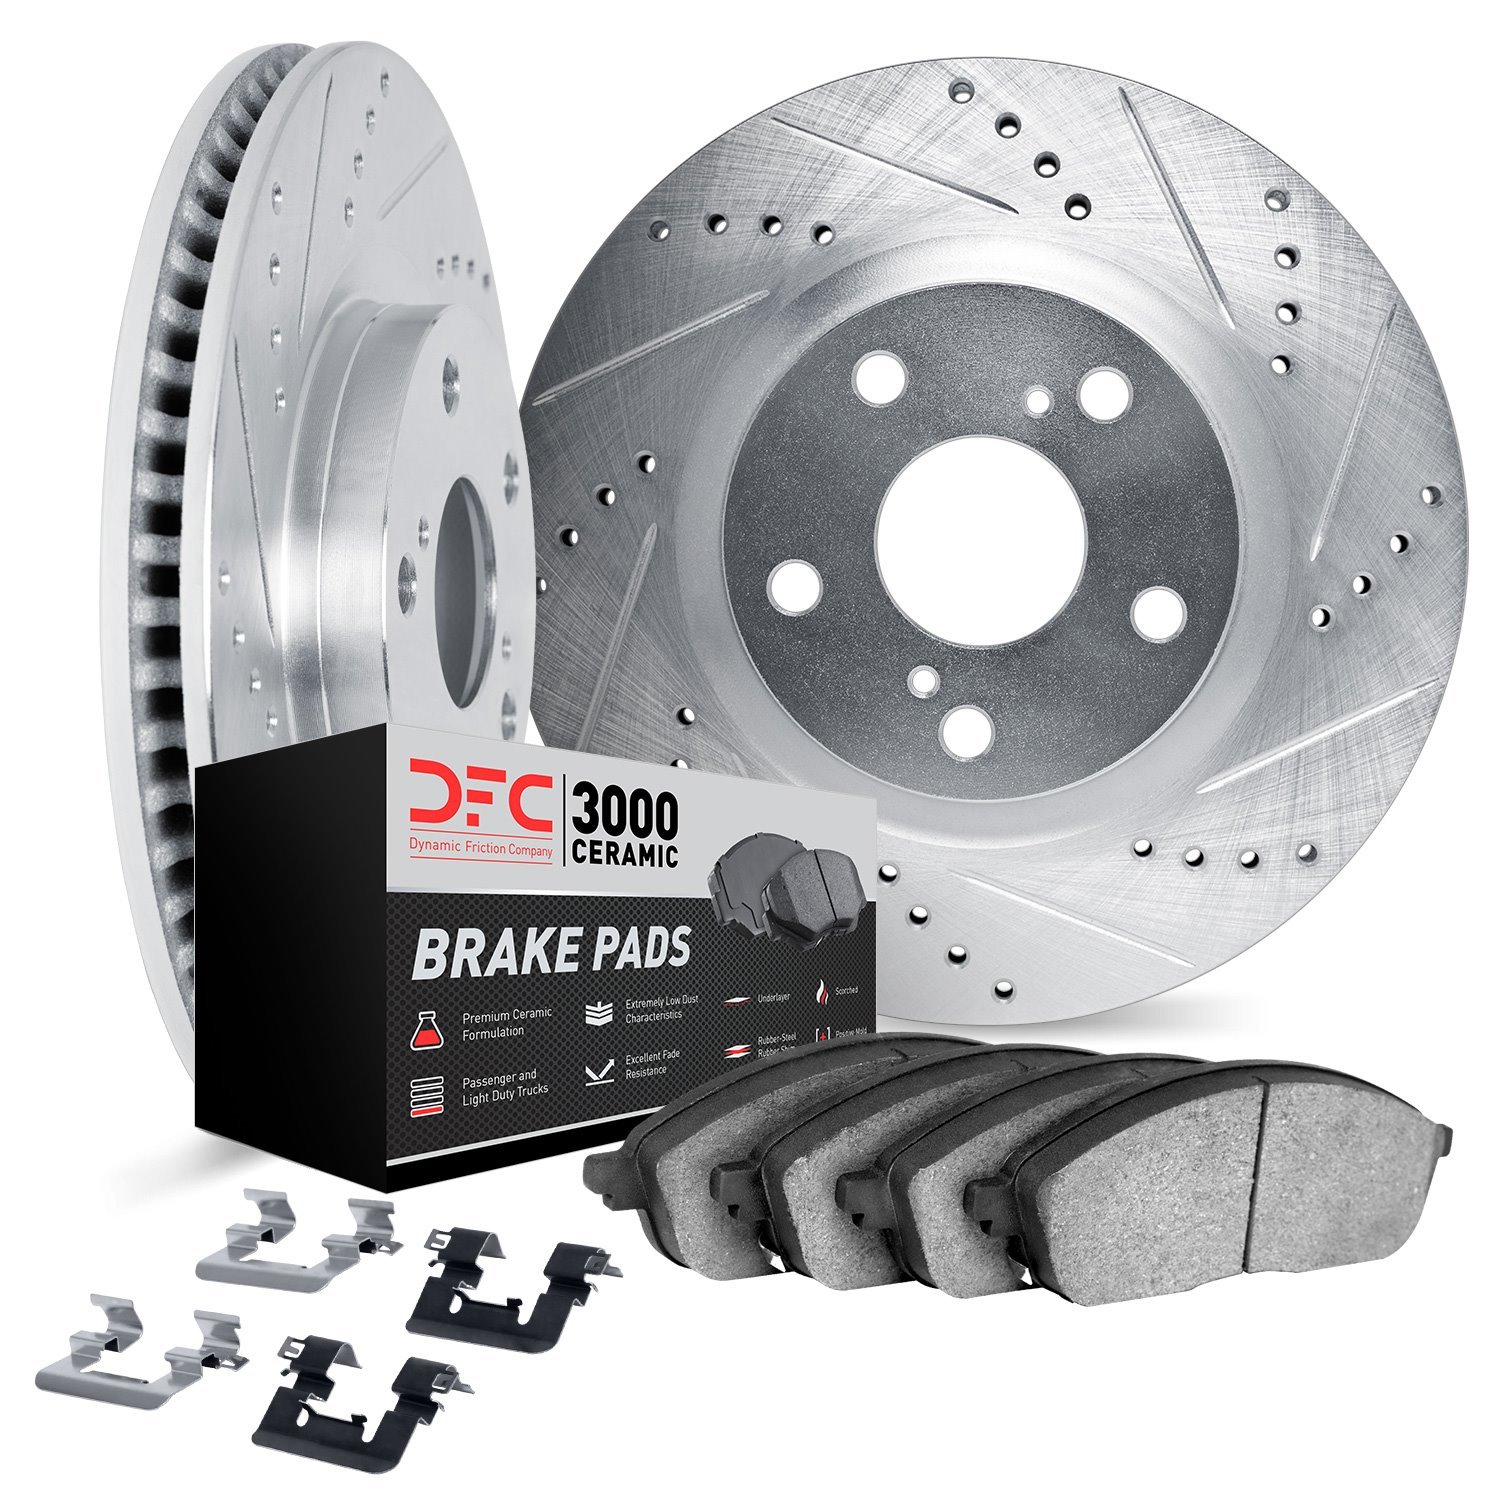 7312-75032 Drilled/Slotted Brake Rotor with 3000-Series Ceramic Brake Pads Kit & Hardware [Silver], 2014-2015 Lexus/Toyota/Scion